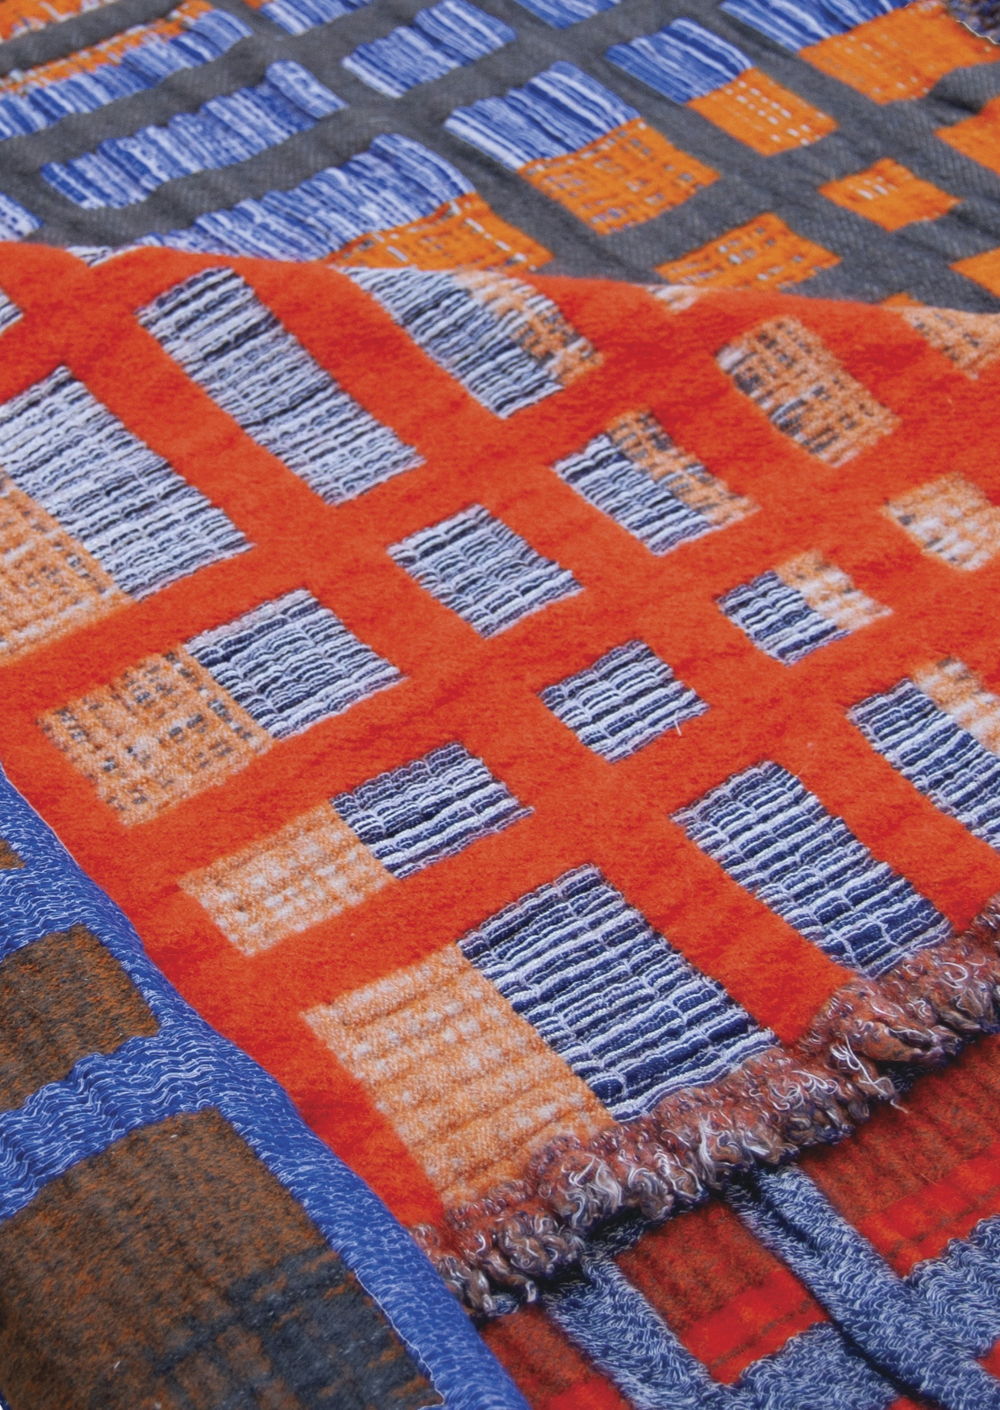 emma terweduwe - TextielLab Gradient - © Emma Terweduwe